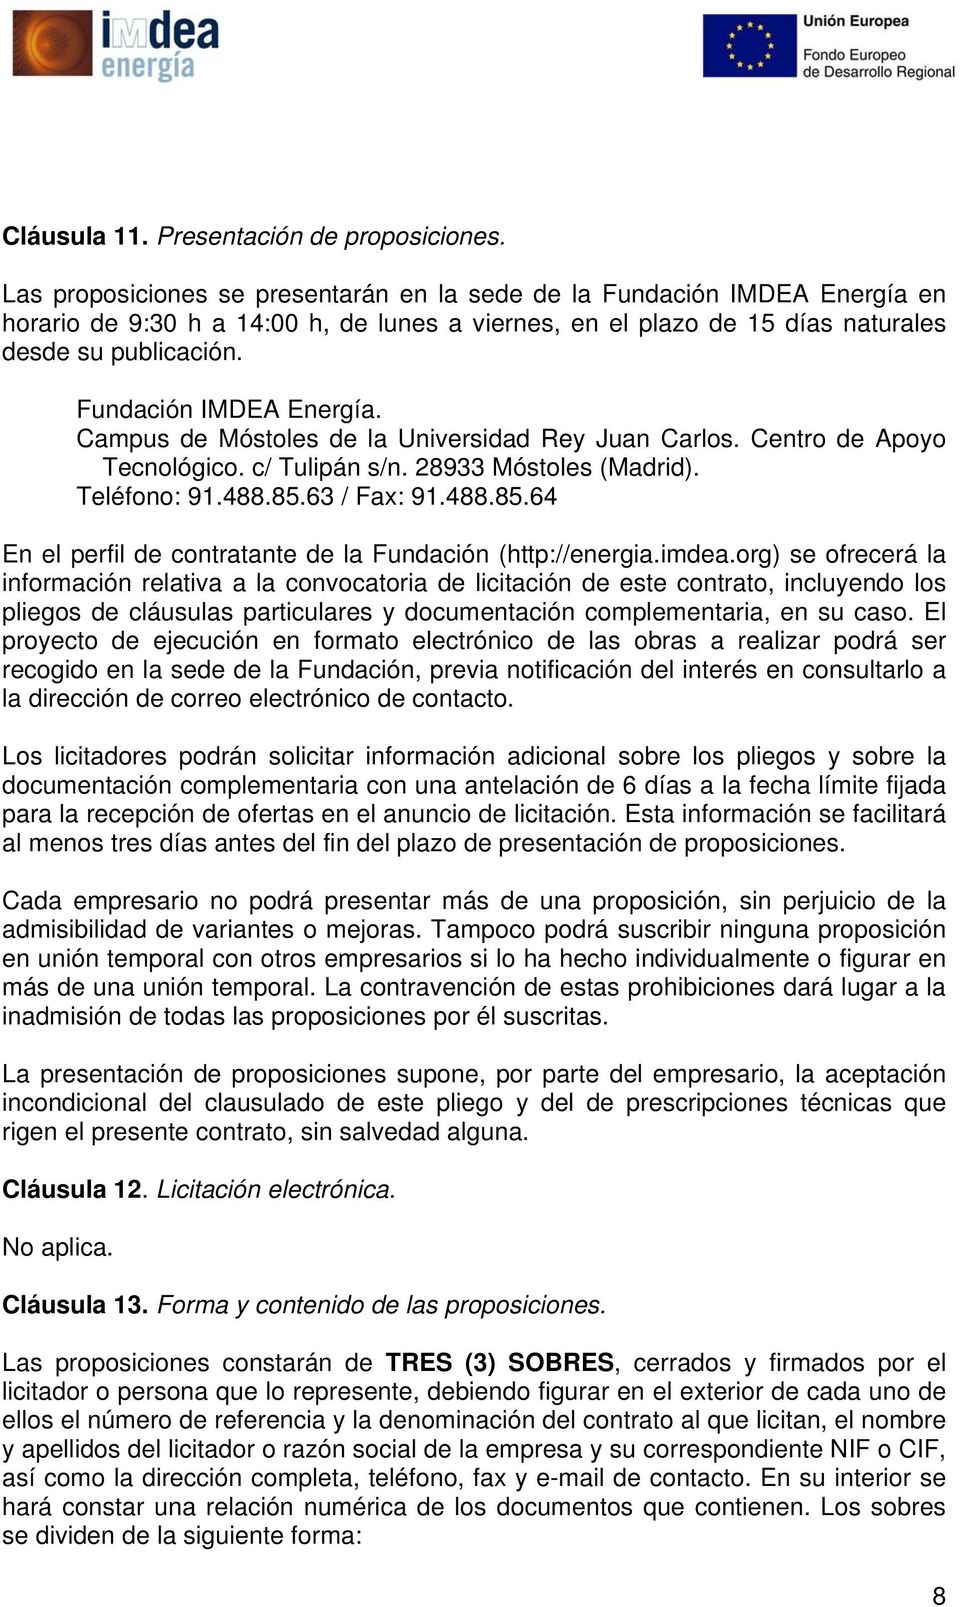 Fundación IMDEA Energía. Campus de Móstoles de la Universidad Rey Juan Carlos. Centro de Apoyo Tecnológico. c/ Tulipán s/n. 28933 Móstoles (Madrid). Teléfono: 91.488.85.